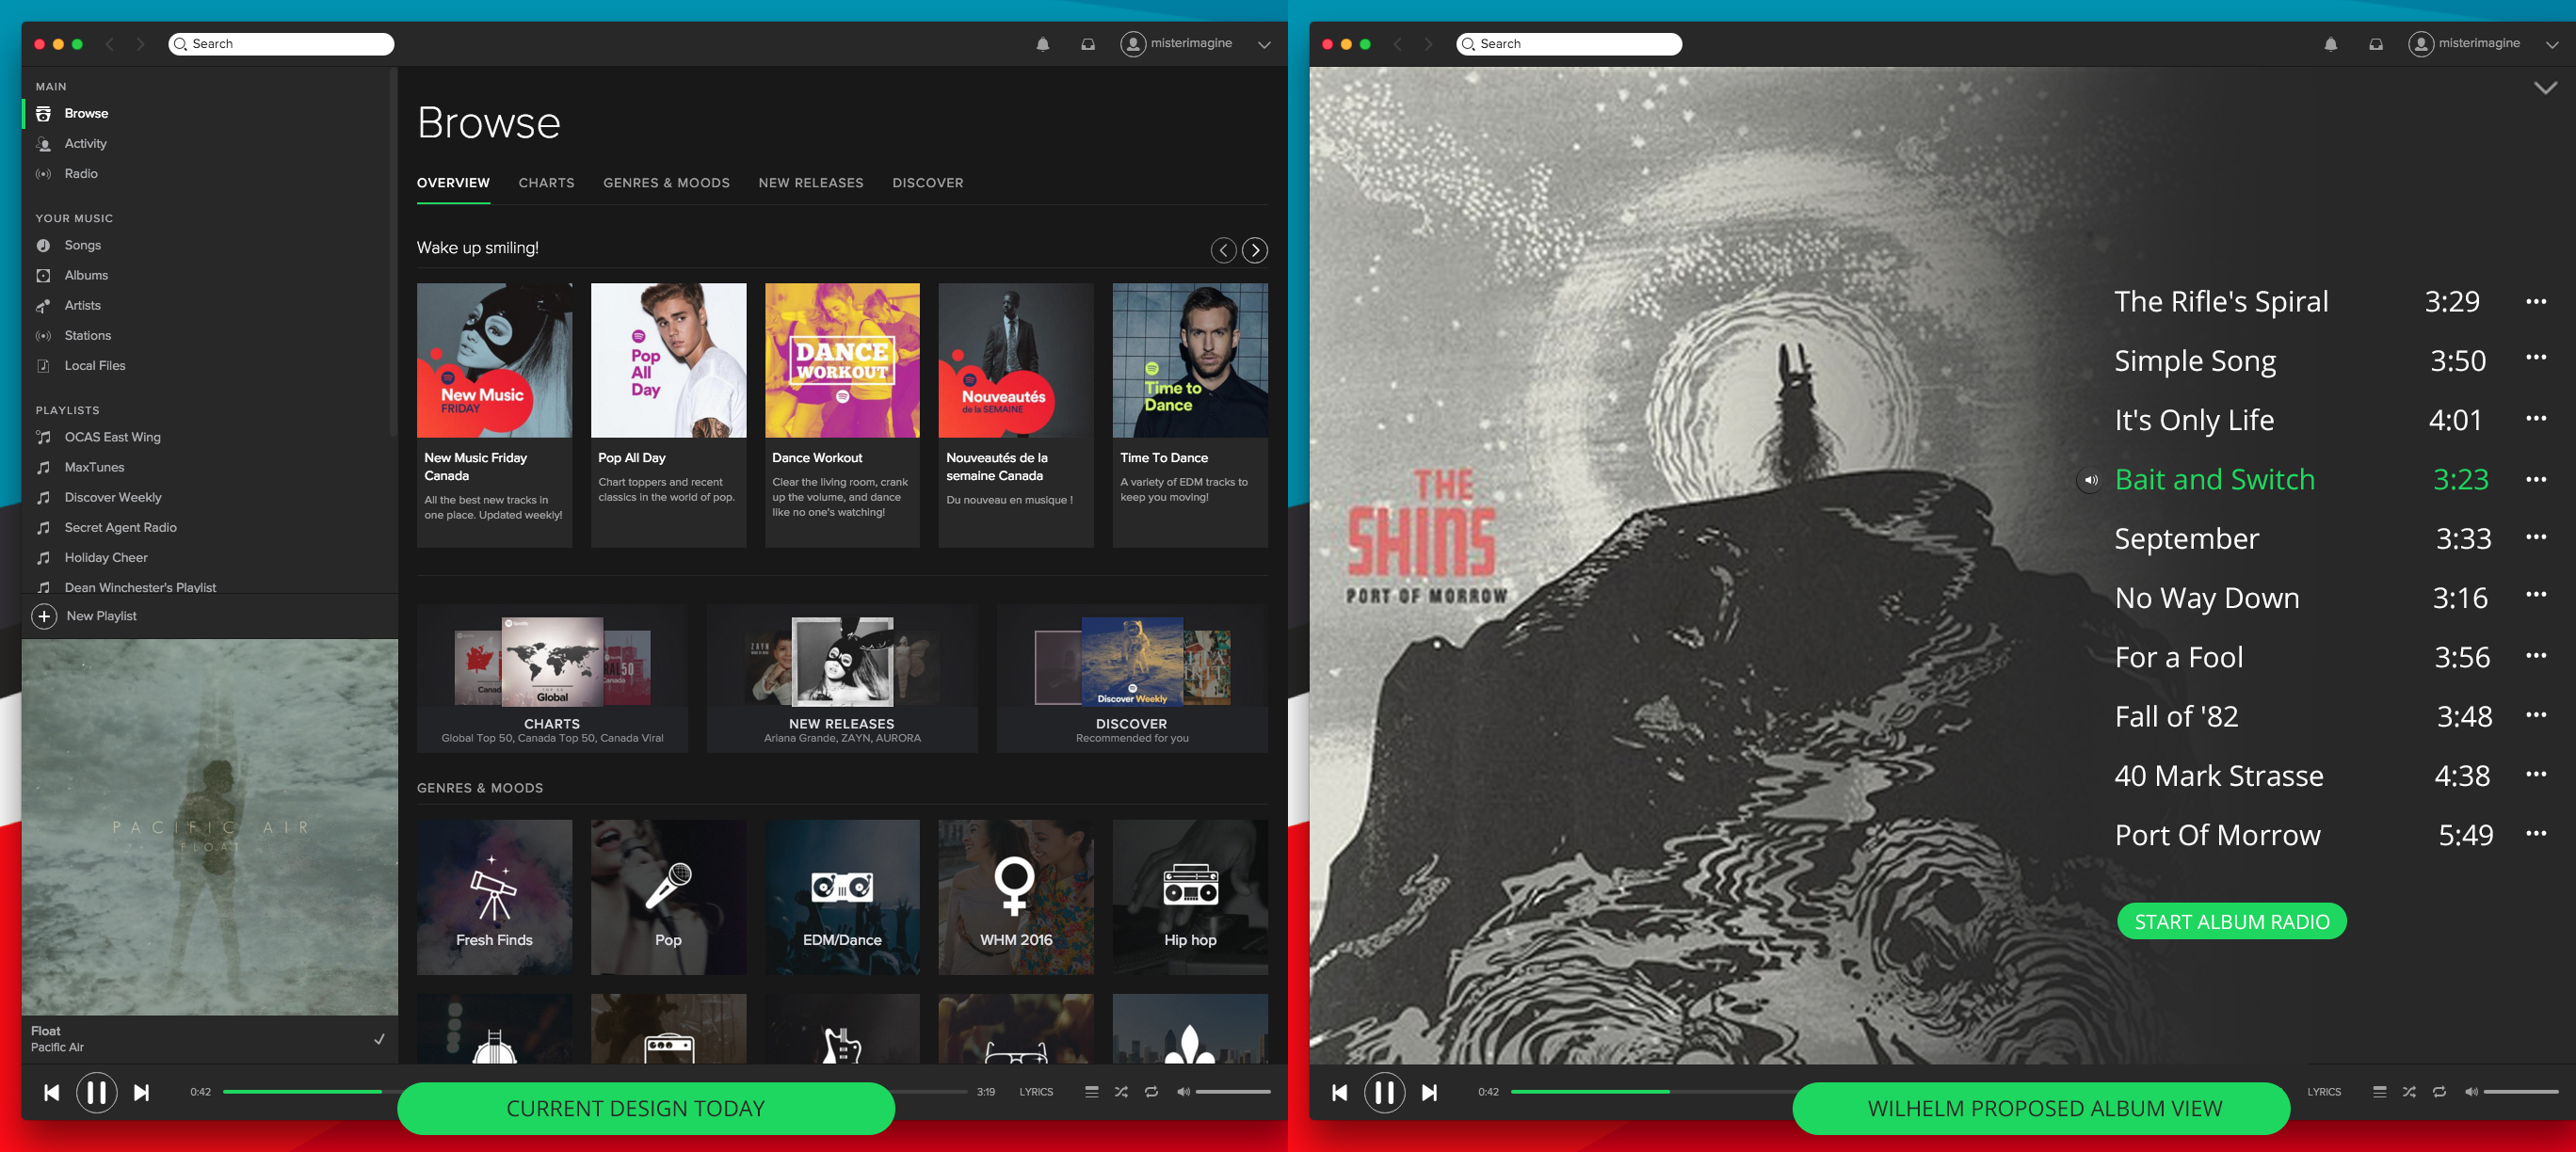 Desktop] View larger Album Art - The Spotify Community